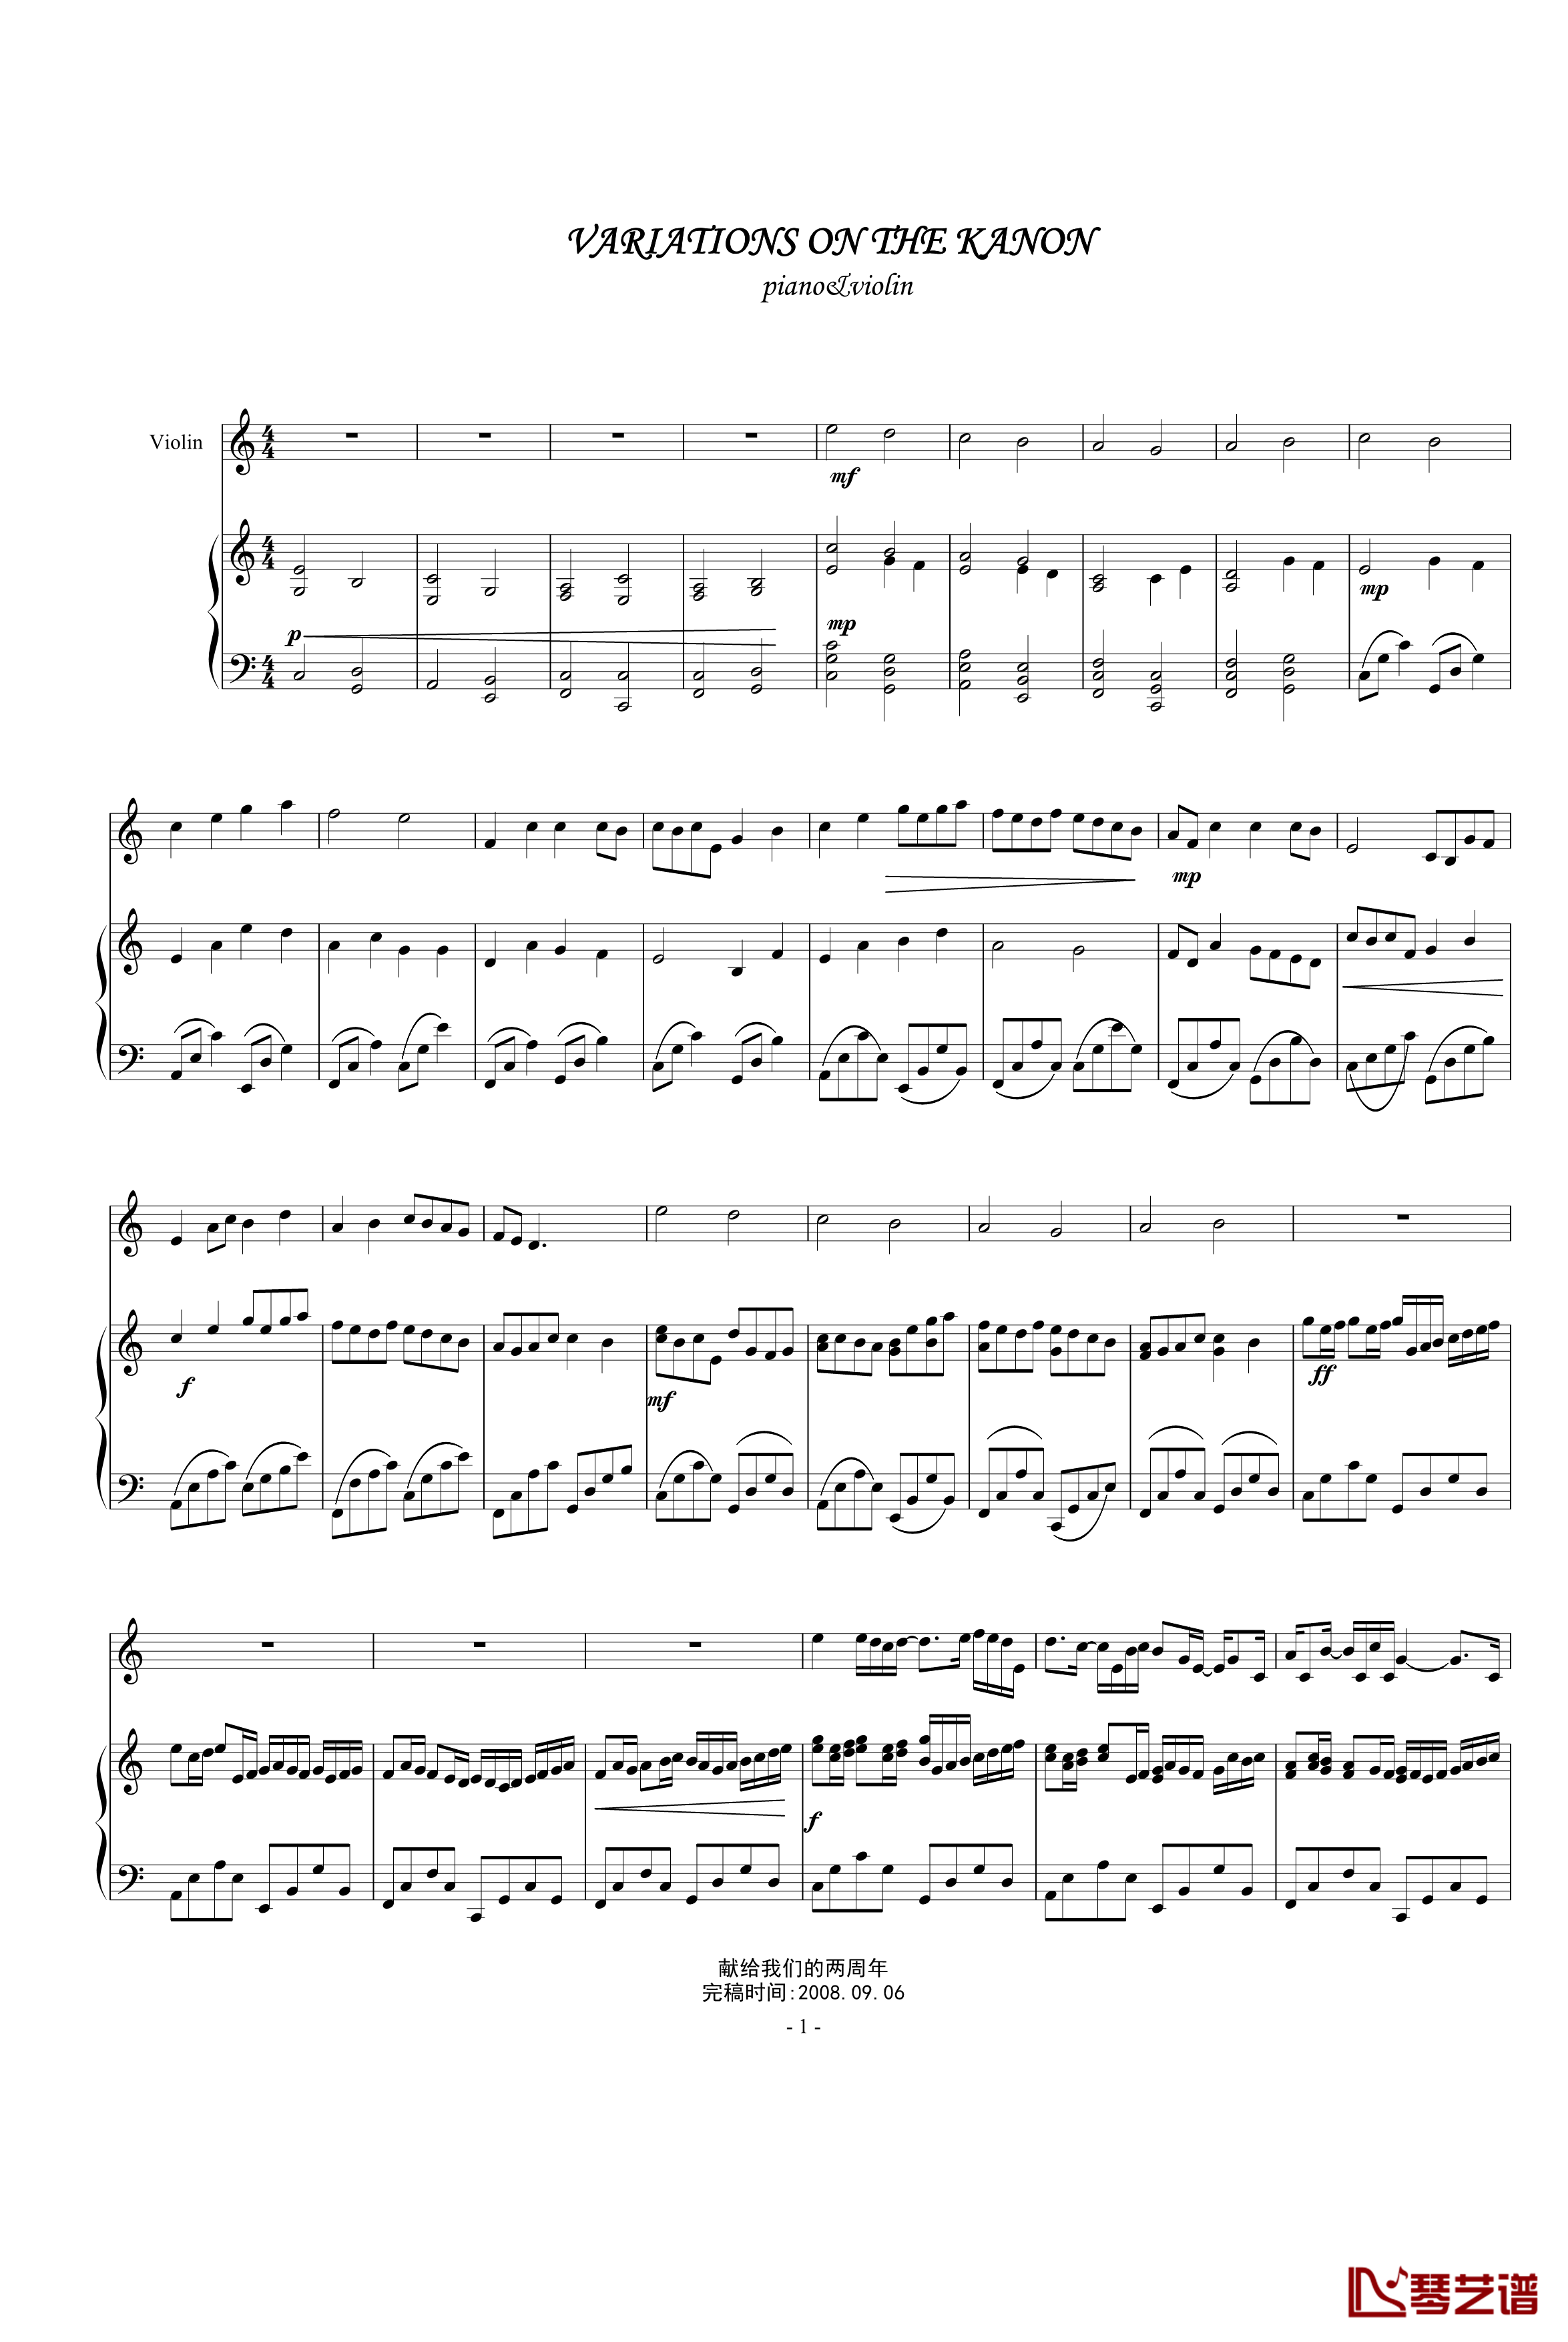 卡农-小提琴&钢琴钢琴谱-camellia修改版-帕赫贝尔-Pachelbel1